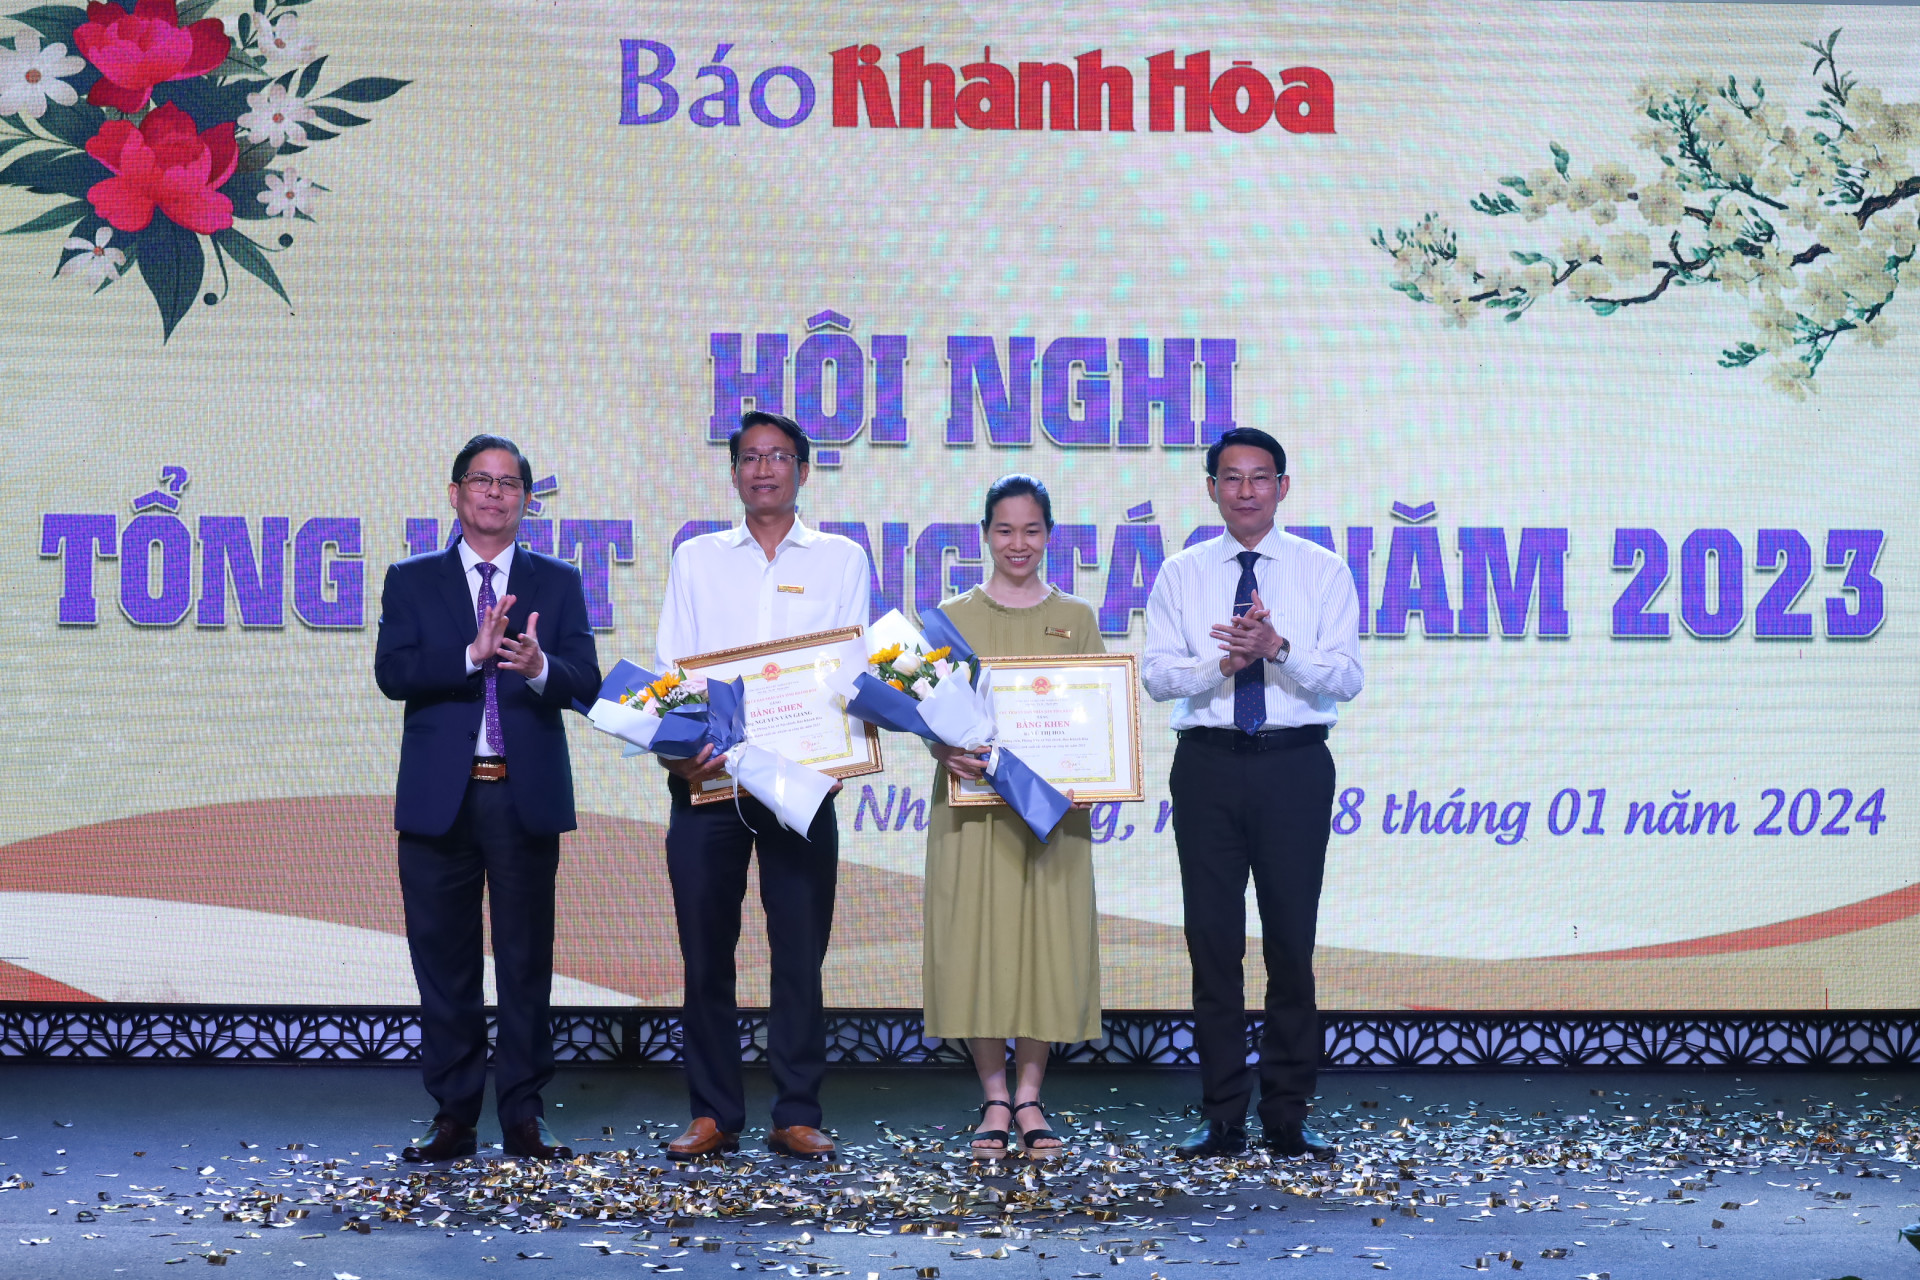 Đồng chí Nguyễn Tấn Tuân và đồng chí Đinh Văn Thiệu trao bằng khen cho 2 cá nhân.